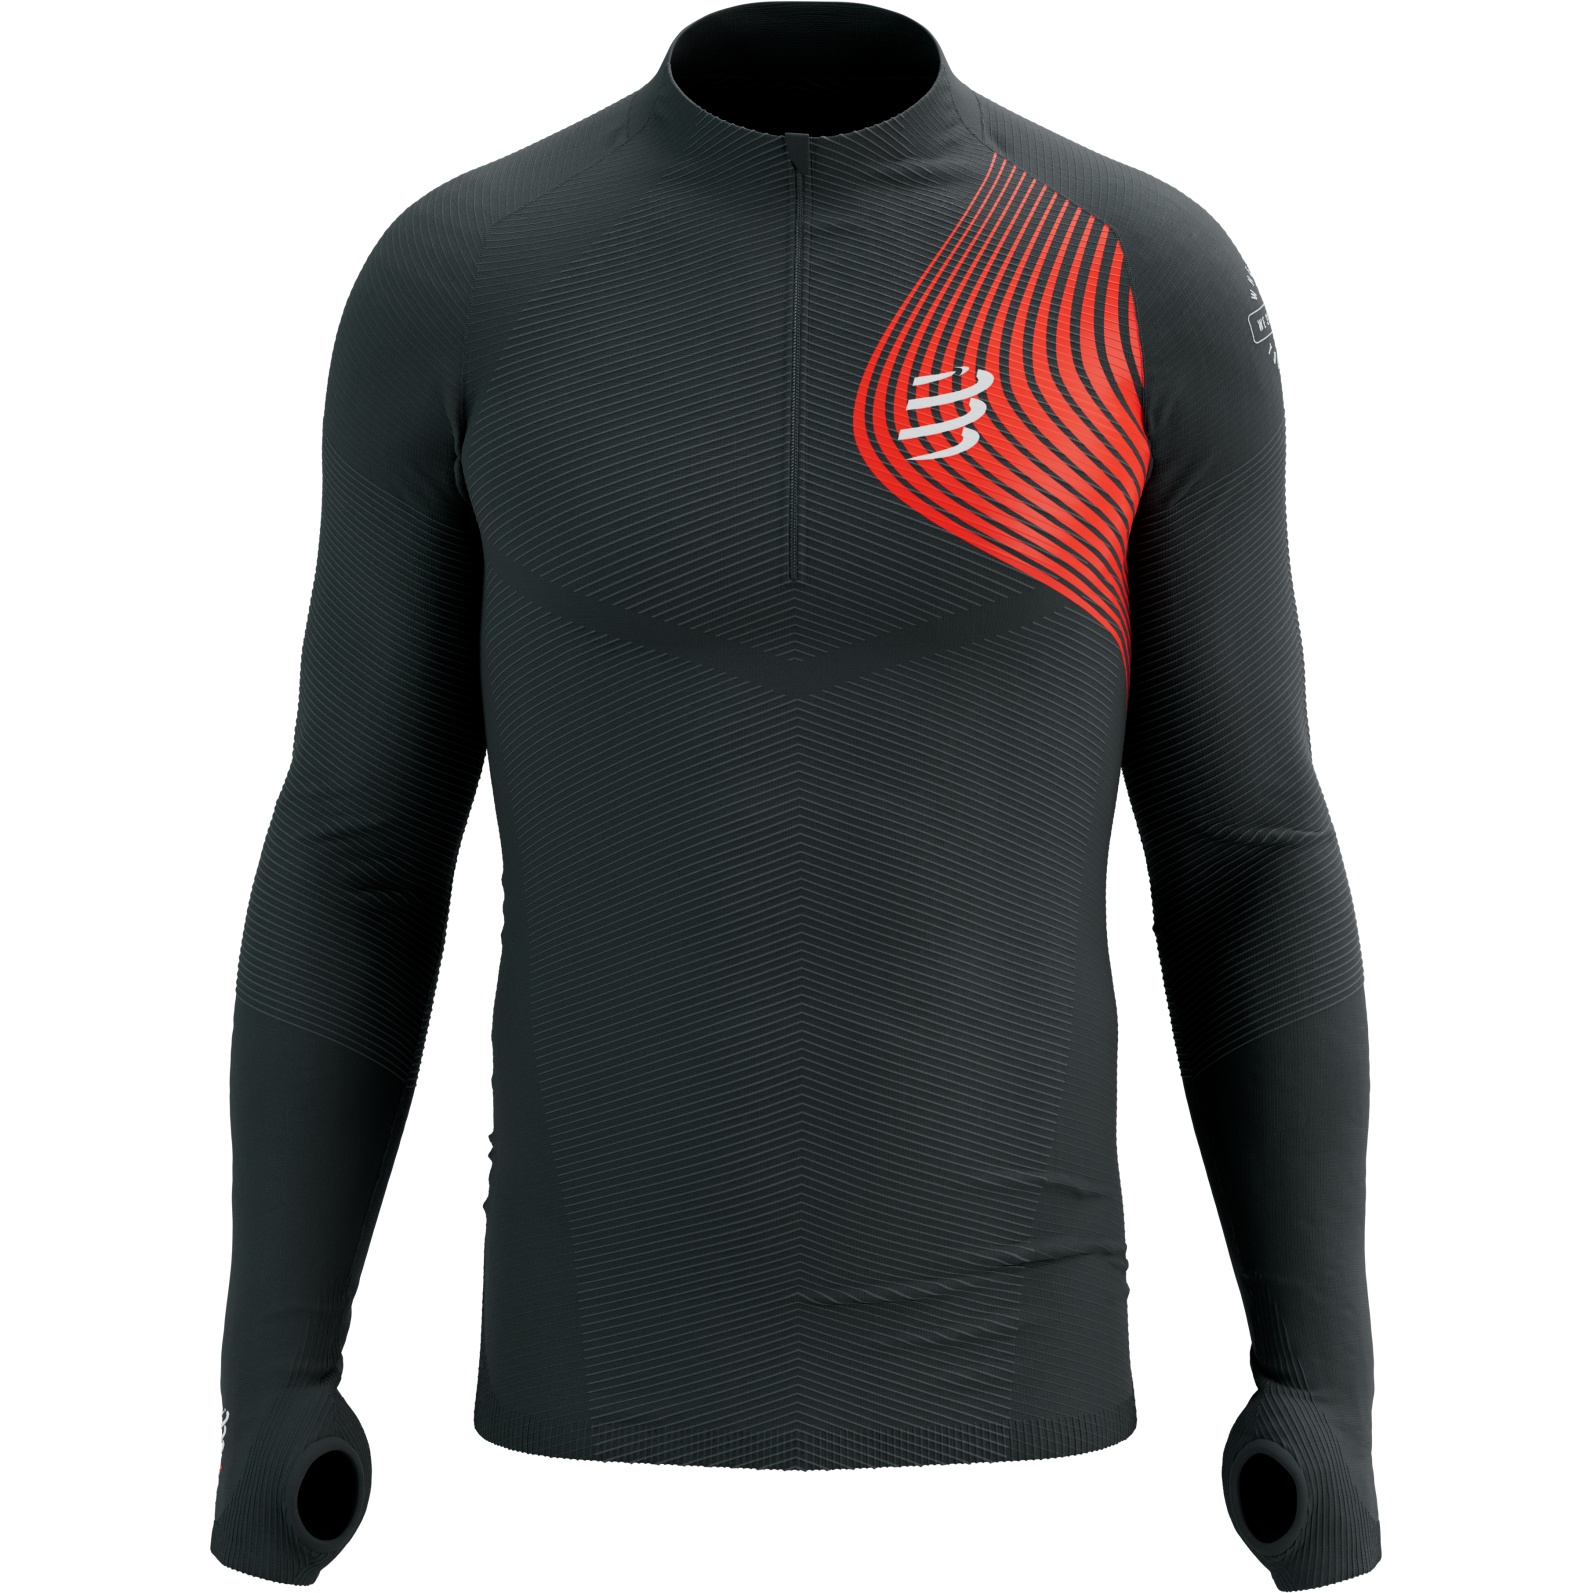 Productfoto van Compressport Winter Trail Postural Shirt met Lange Mouwen - zwart/rood